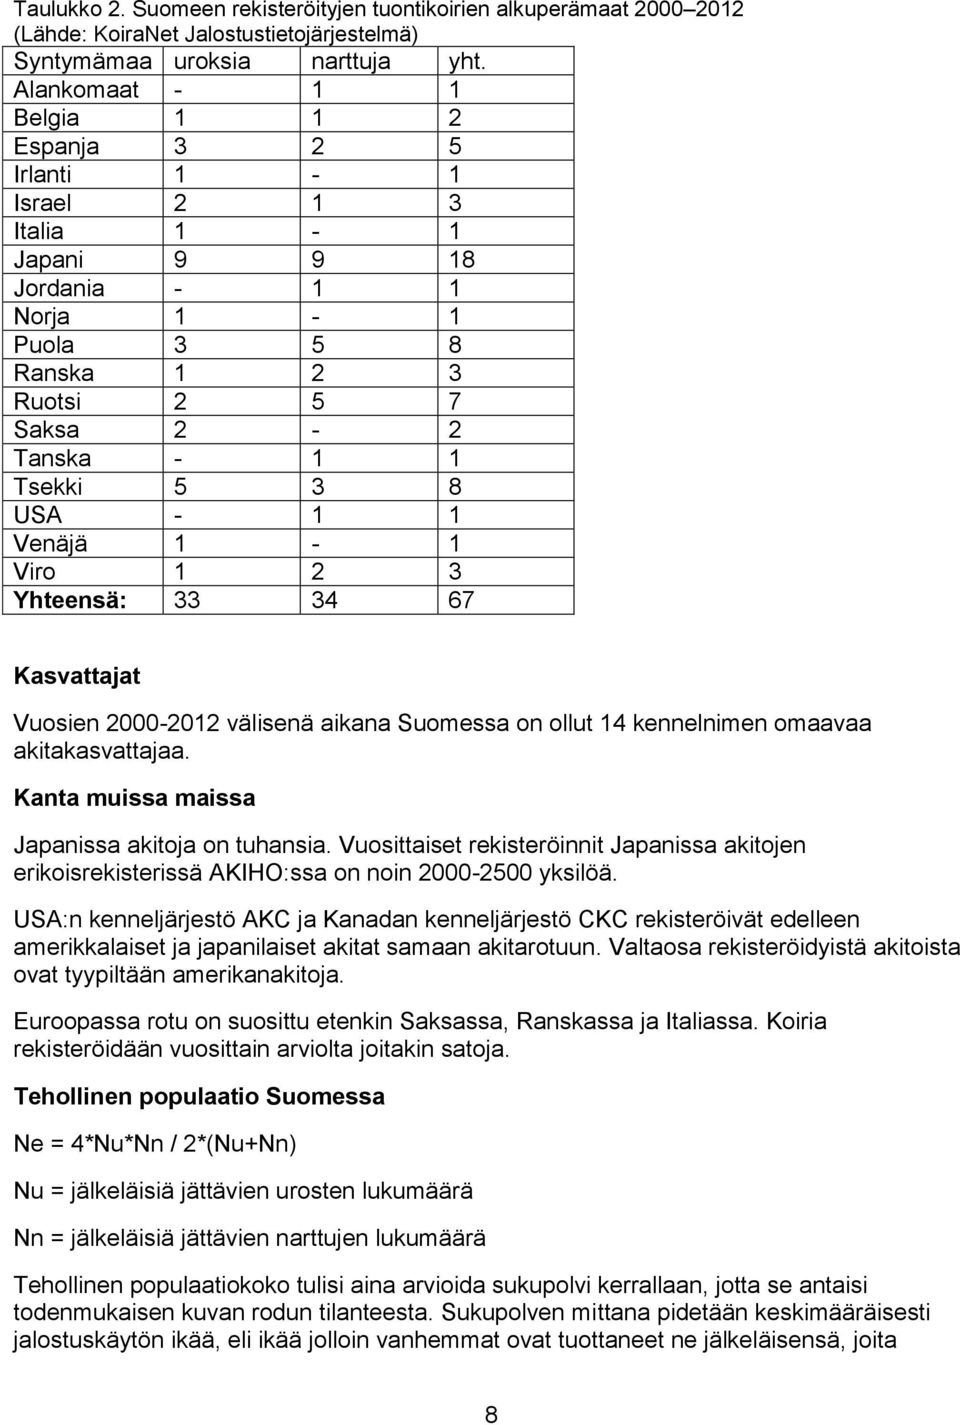 1 1 Venäjä 1-1 Viro 1 2 3 Yhteensä: 33 34 67 Kasvattajat Vuosien 2000-2012 välisenä aikana Suomessa on ollut 14 kennelnimen omaavaa akitakasvattajaa. Kanta muissa maissa Japanissa akitoja on tuhansia.